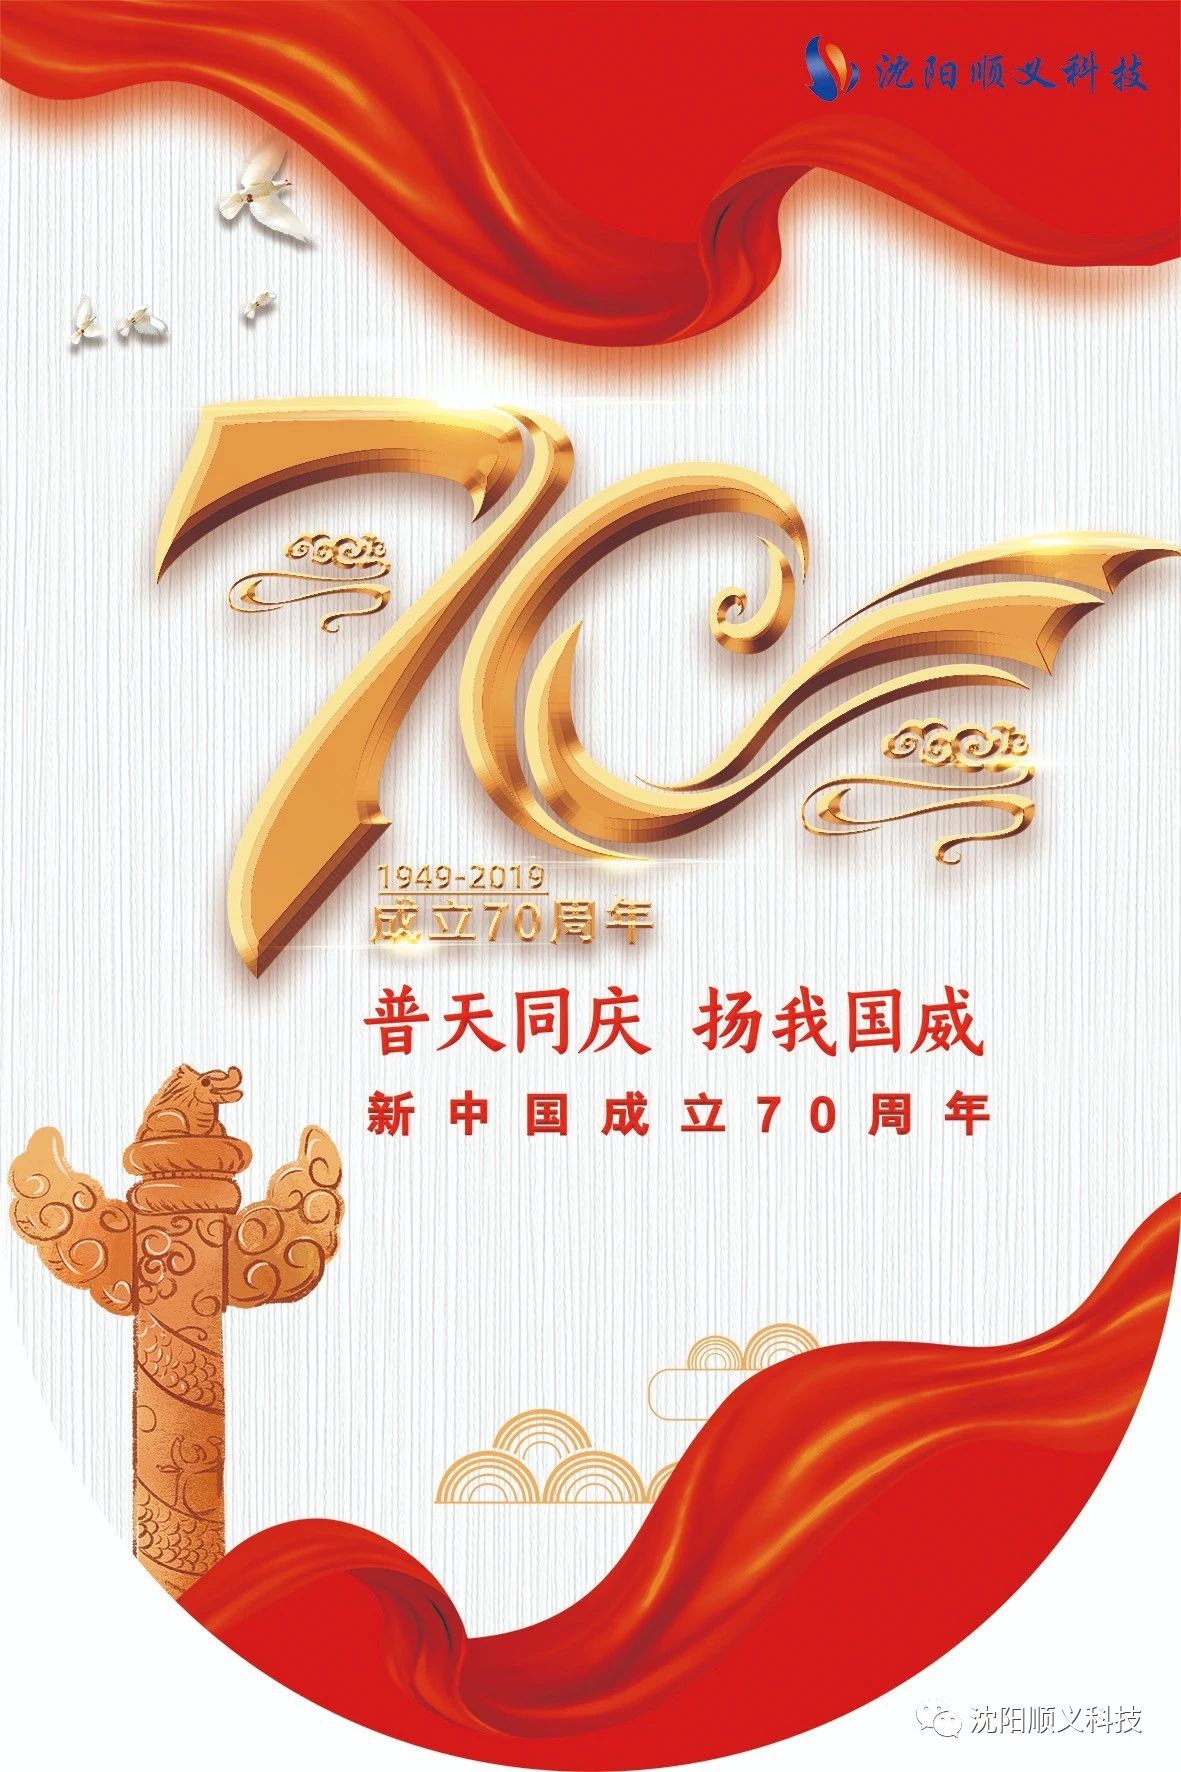 顺义科技恭祝祖国70周年华诞(图1)